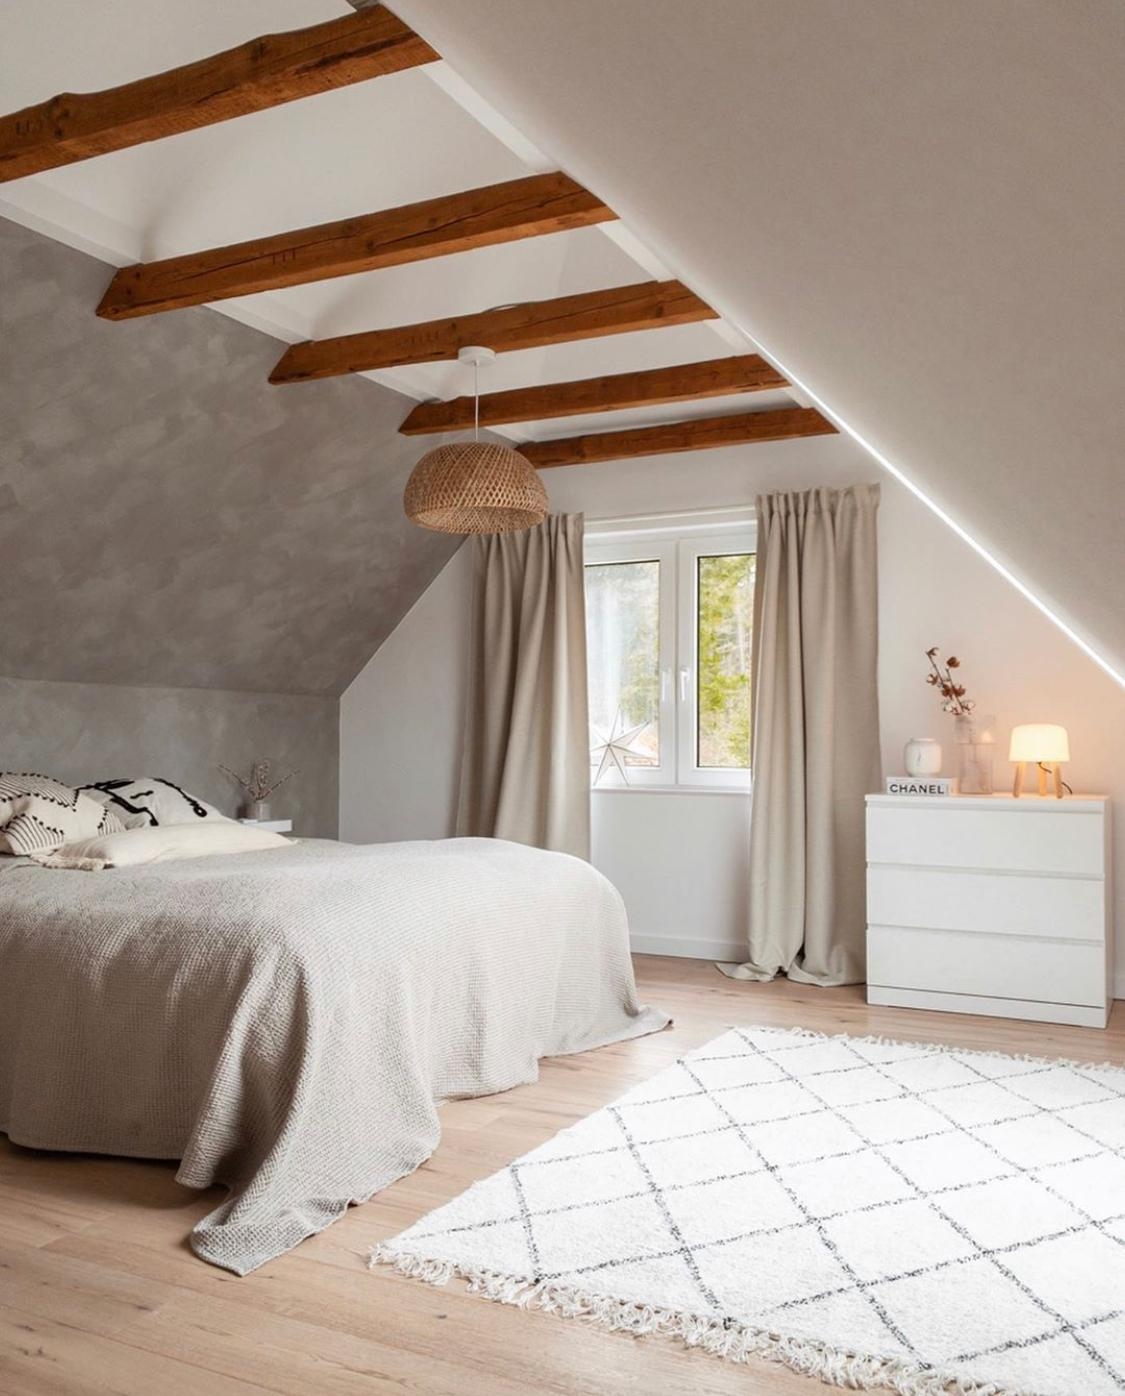 3 Monate altes Schlafzimmer, 88 Jahre alte Balken 🖤 #schlafzimmer #skandistyle #interior #altbau #altbauliebe #bett